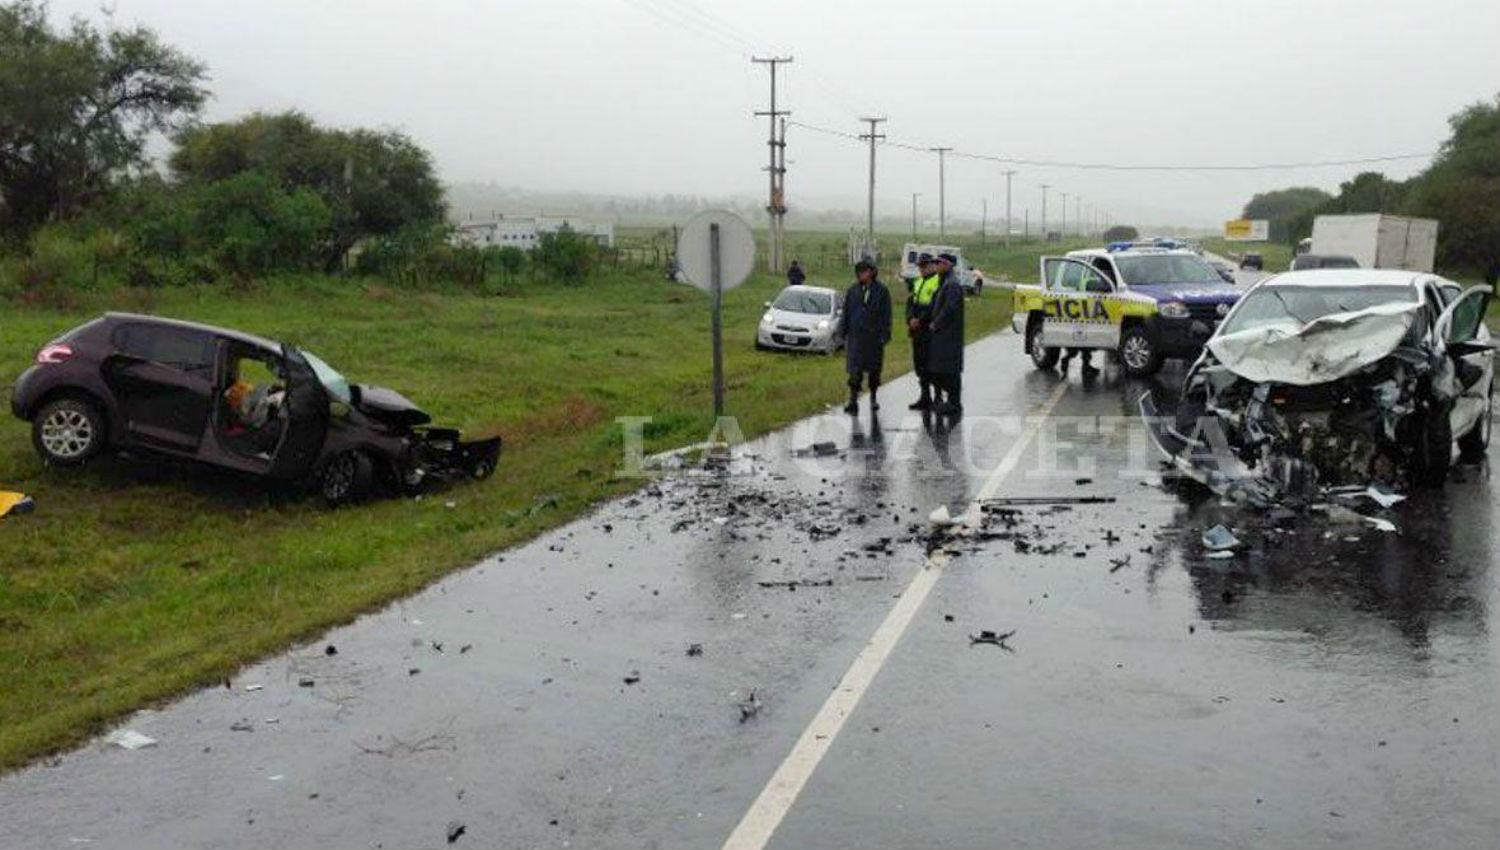 TRÁGICO. Los dos vehículos quedaron destruidos después del choque que le costó la vida a tres adultos. LA GACETA / FOTO DE JUAN PABLO SÁNCHEZ NOLI

